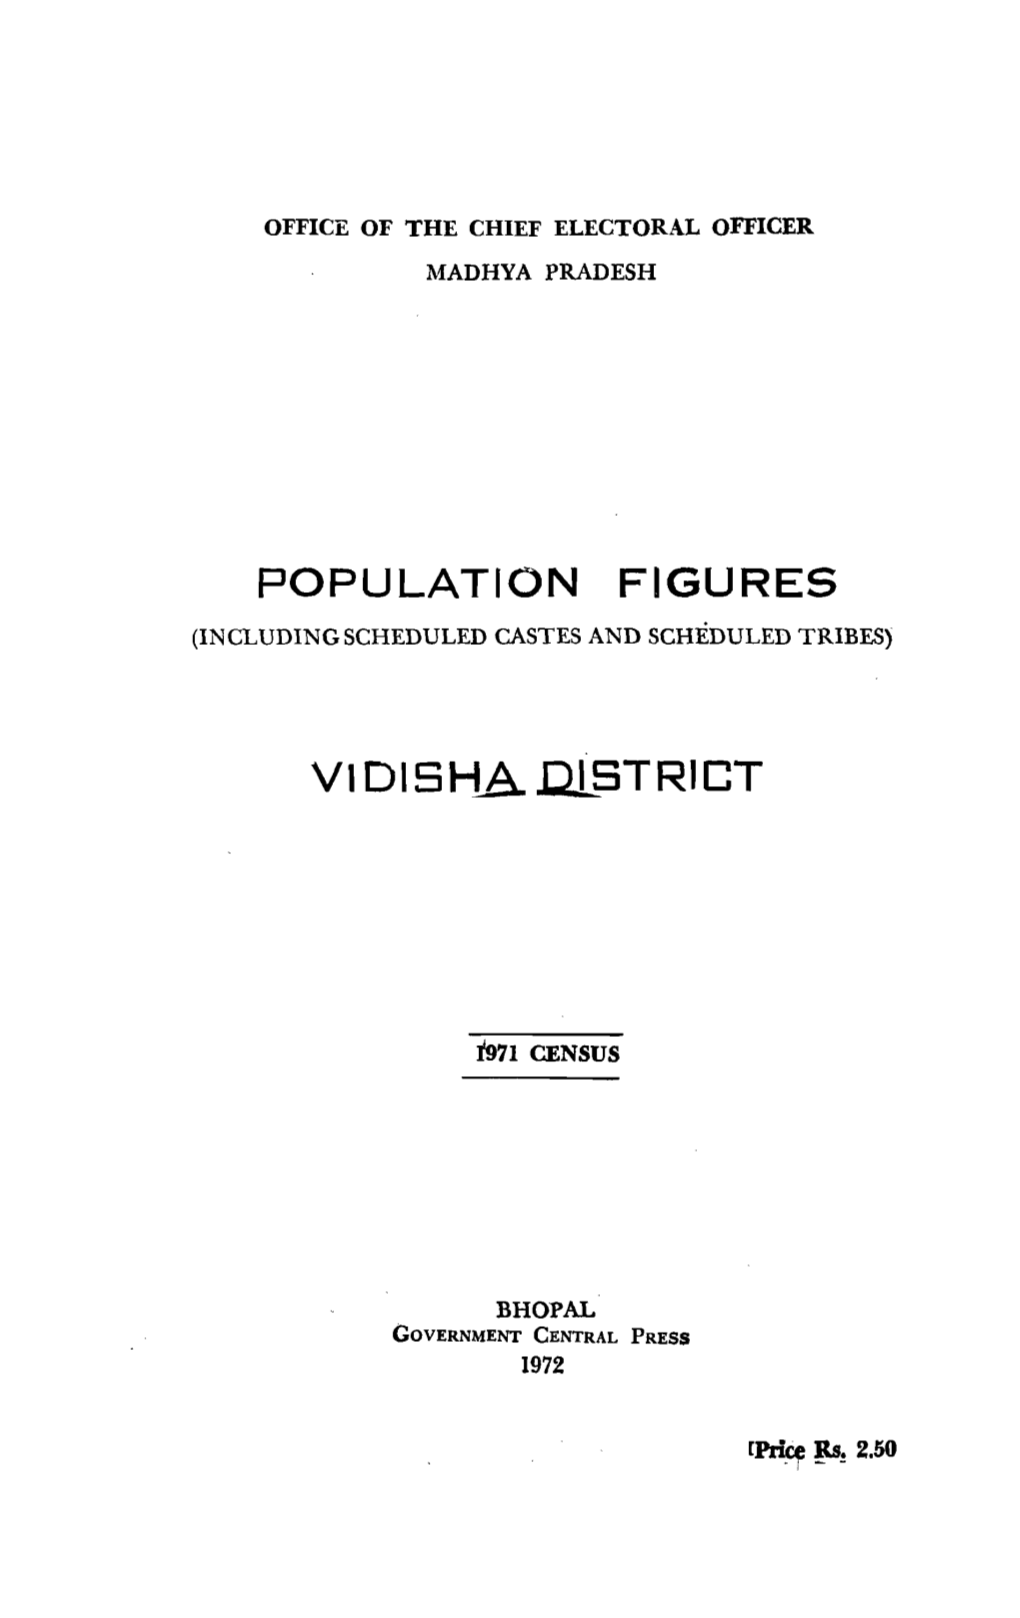 Population Figures, Vidisha